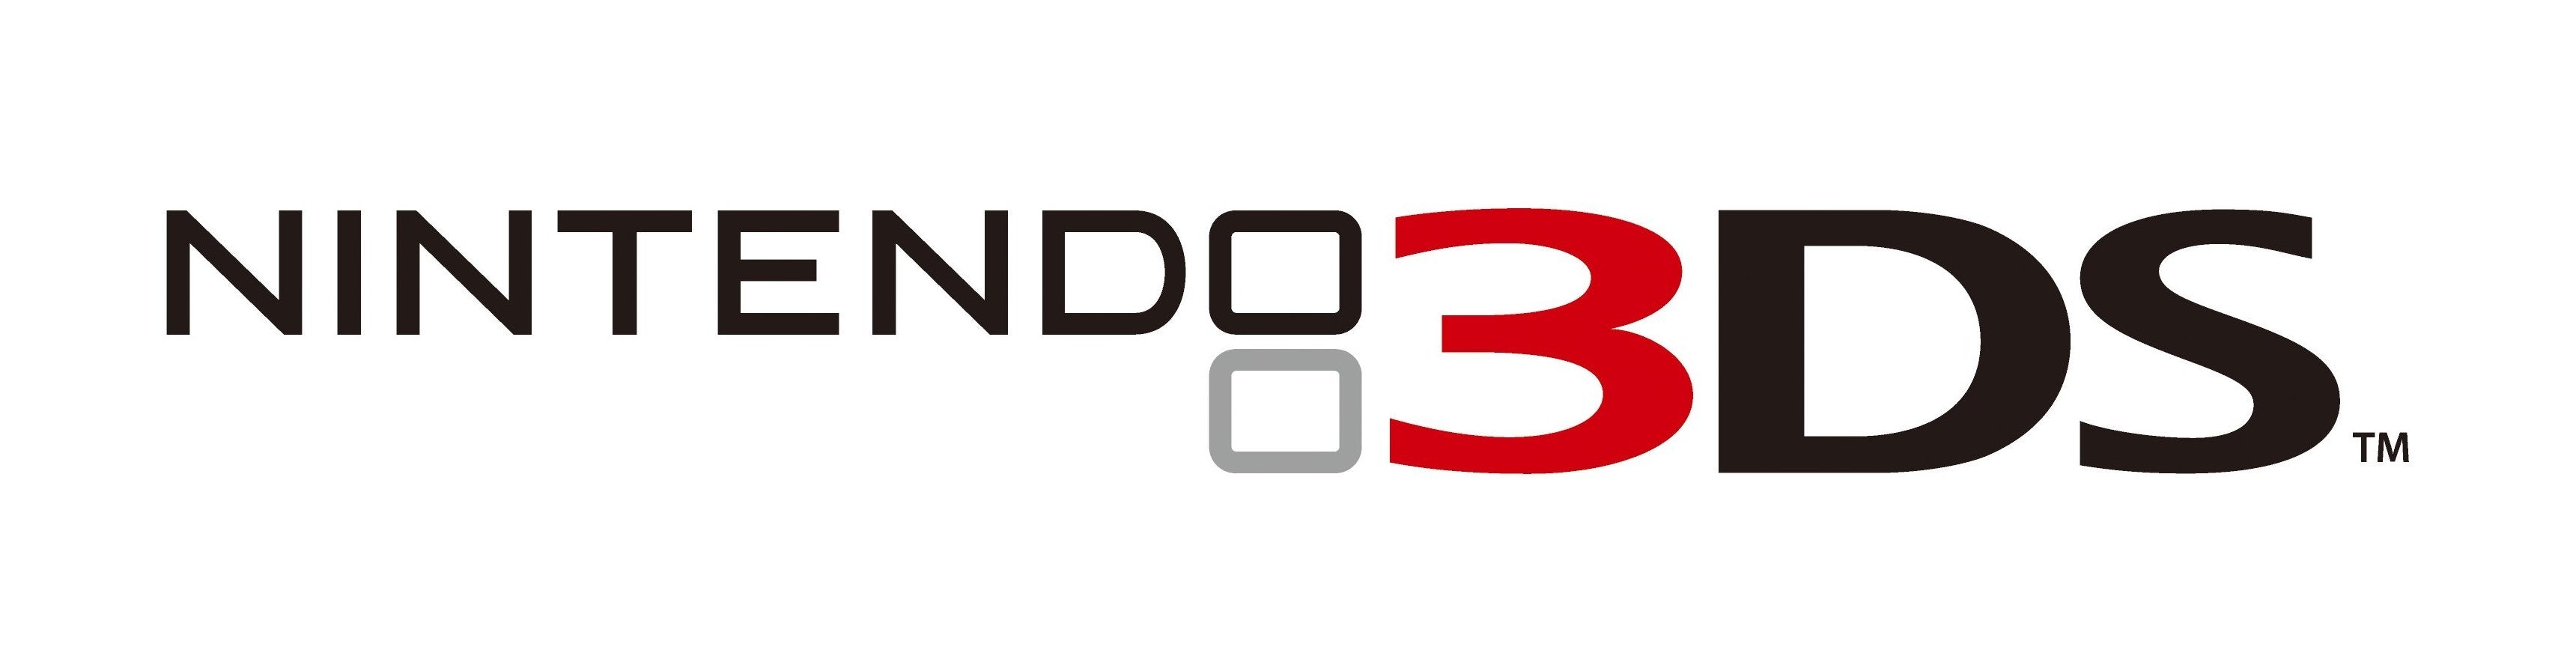 Afbeeldingen van Nintendo 3DS bonusgame-actie winter 2014 aangekondigd